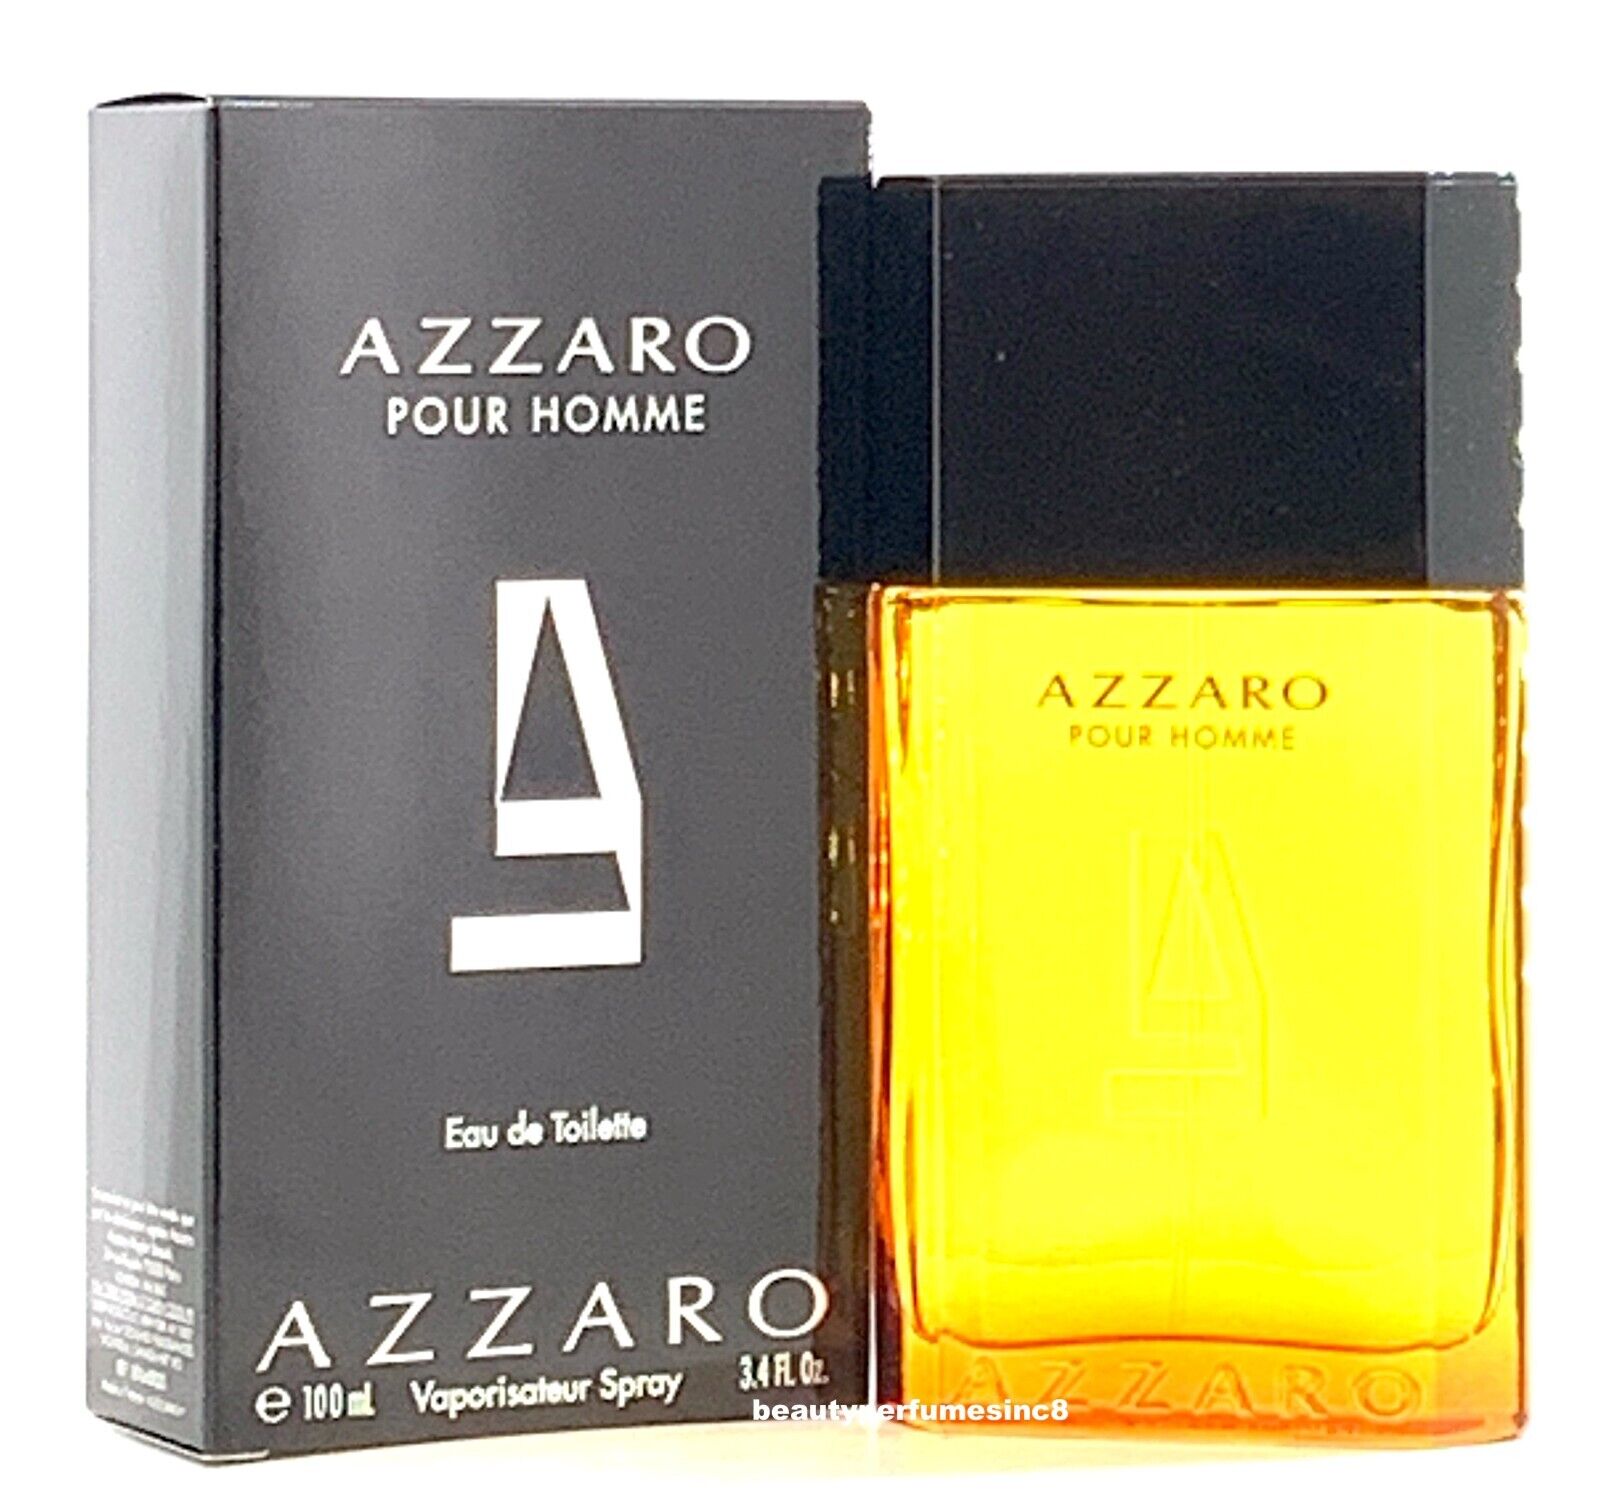 Azzaro Pour Homme 3.4 oz Eau de Toilette Spray, Perfume for Men New in Box Azzaro AZZ1881